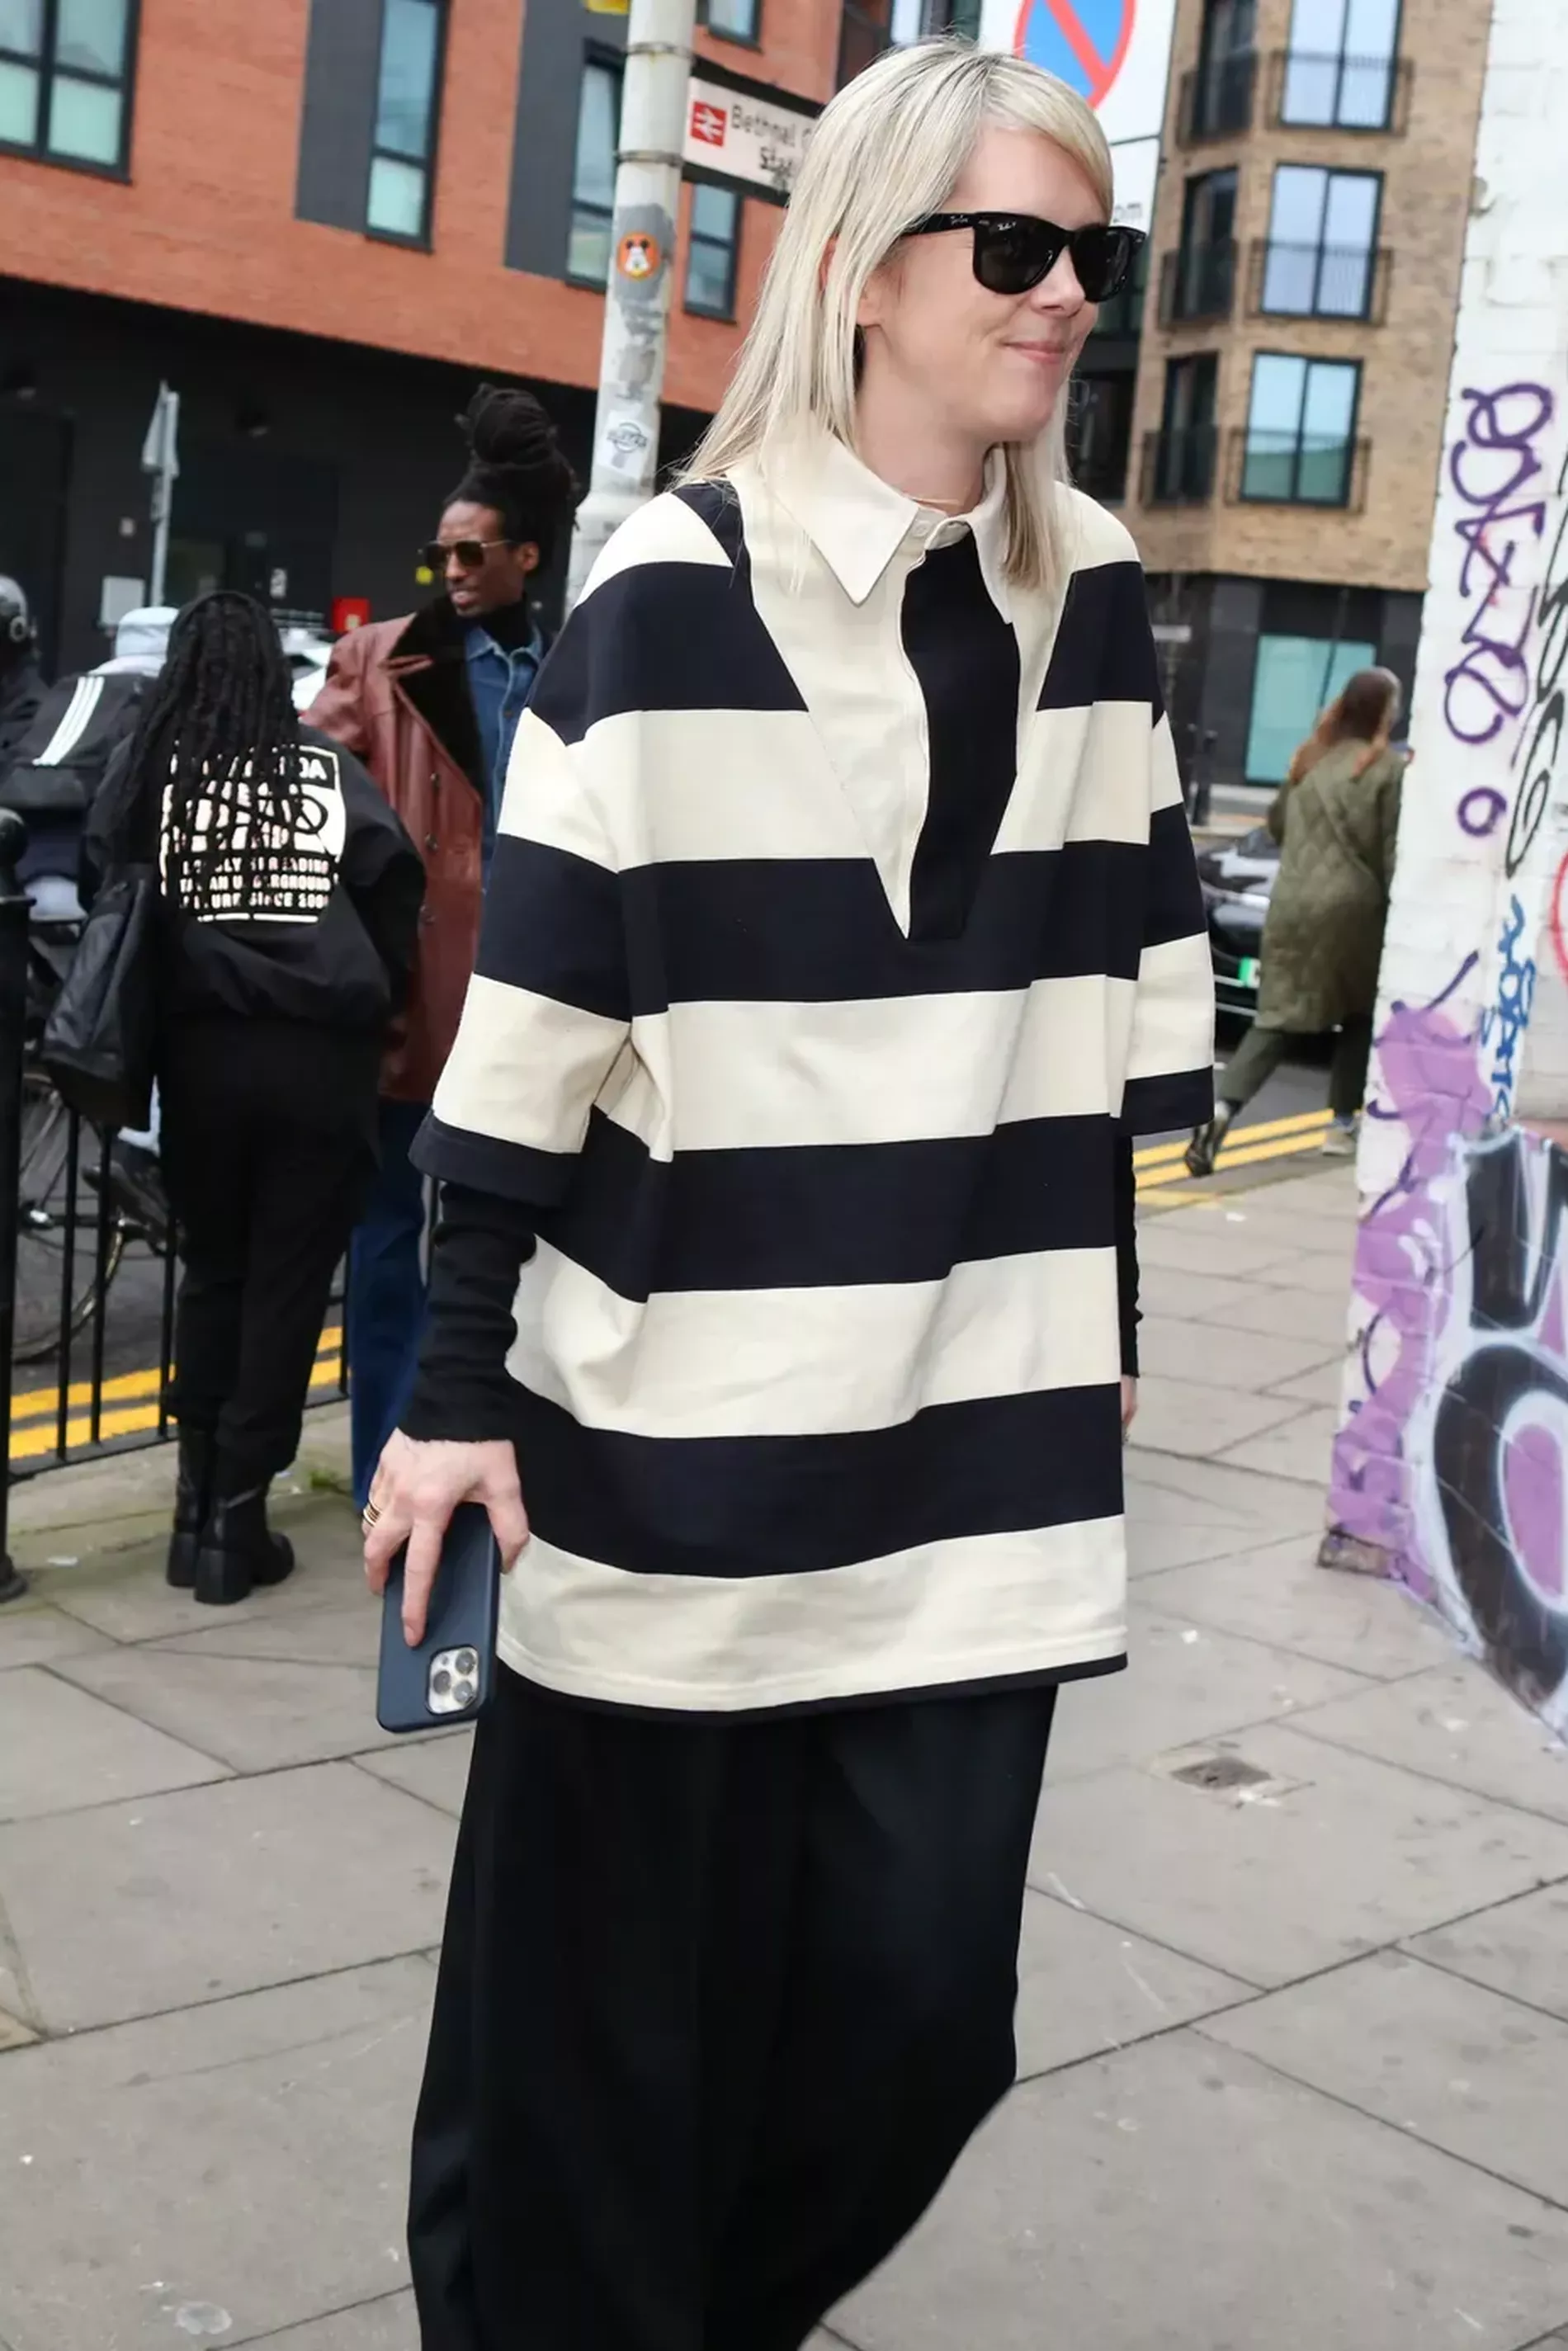 London fashion week guest wears striped oversized shirt 